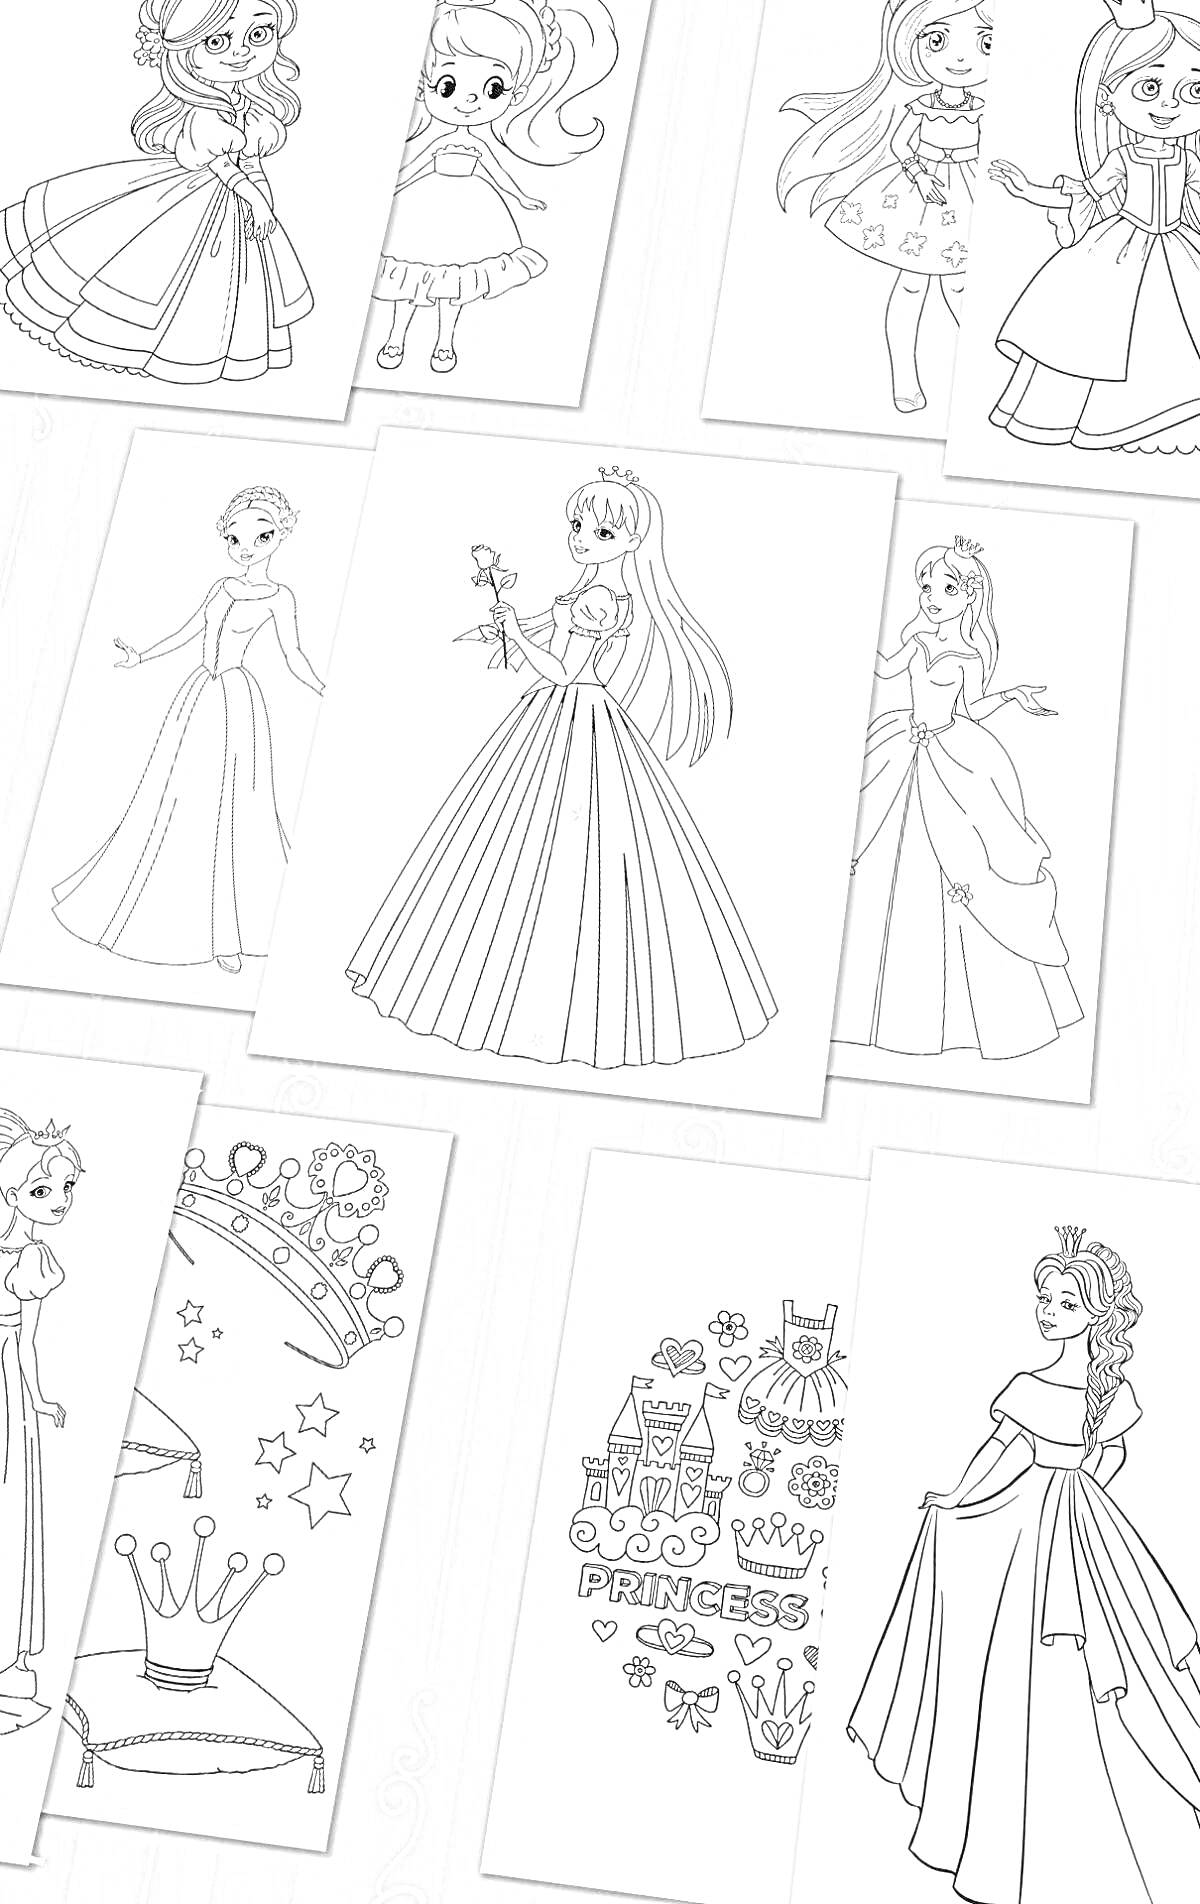 Раскраска Раскраска с принцессами и аксессуарами: принцессы в платьях, короны, звездочки, замок, принцесса с волшебной палочкой, звезда, сердечки